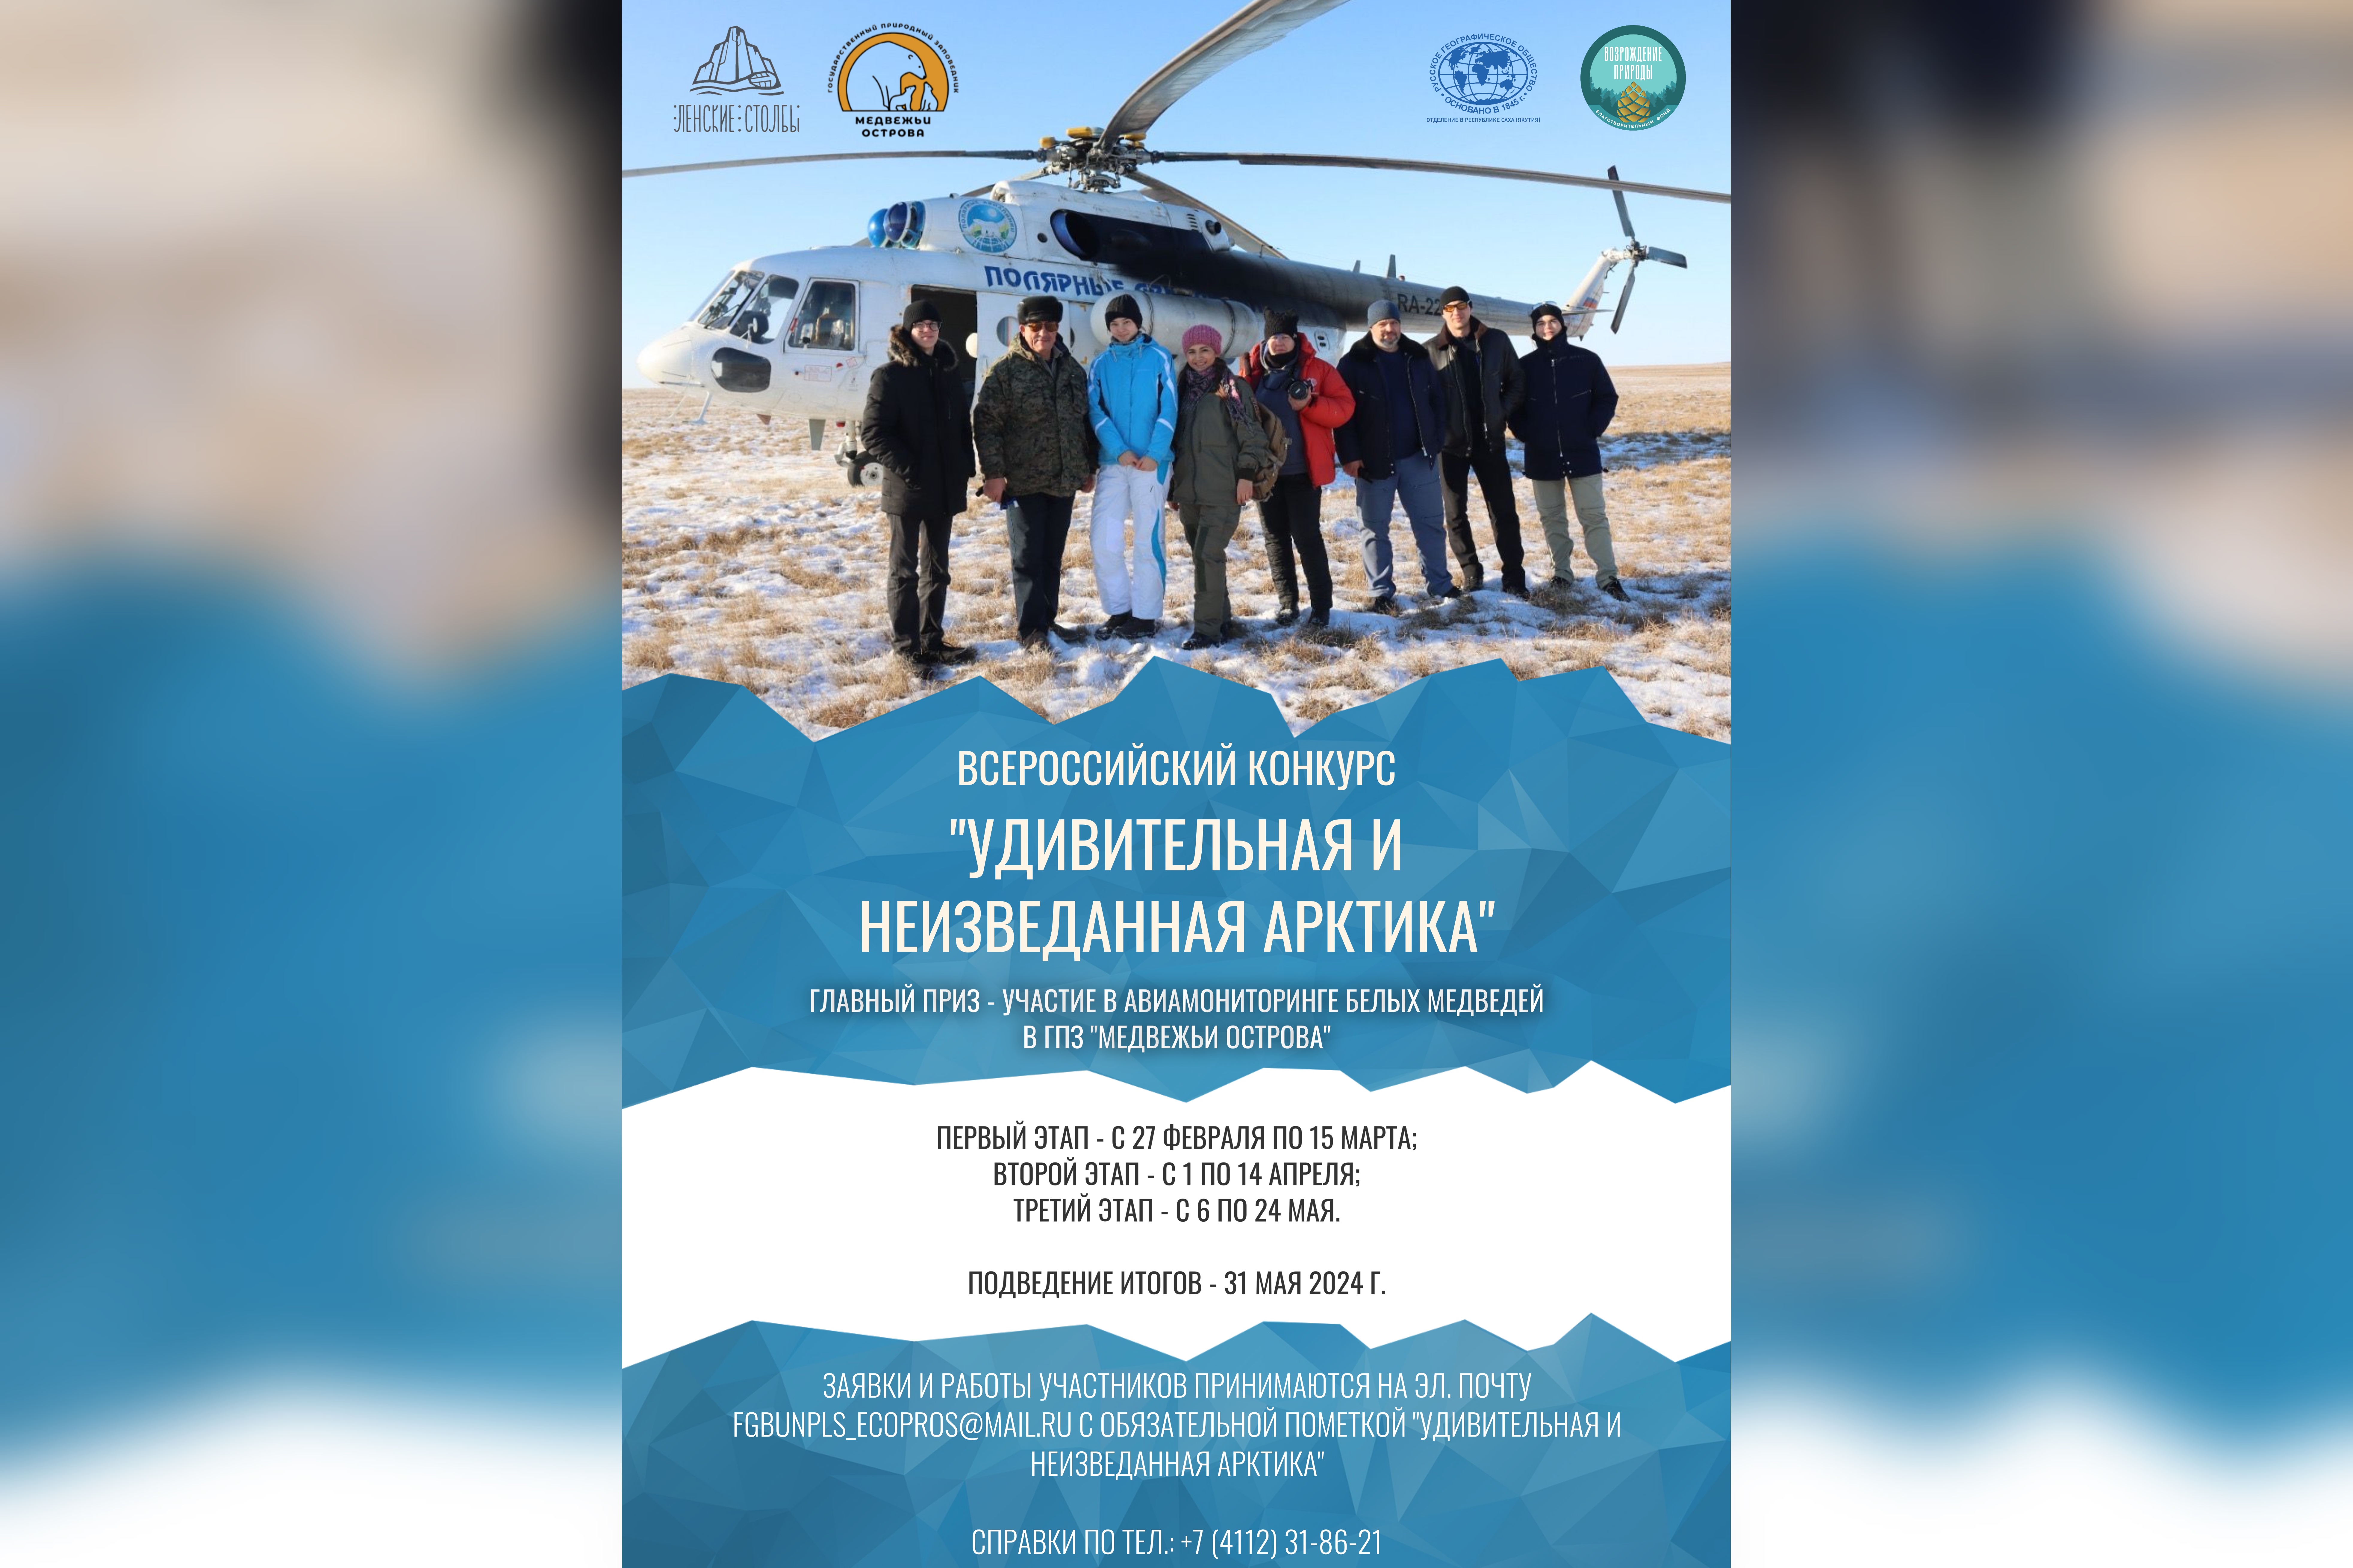 Приглашаем школьников России принять участие в конкурсе "Удивительная и неизведанная Арктика"!